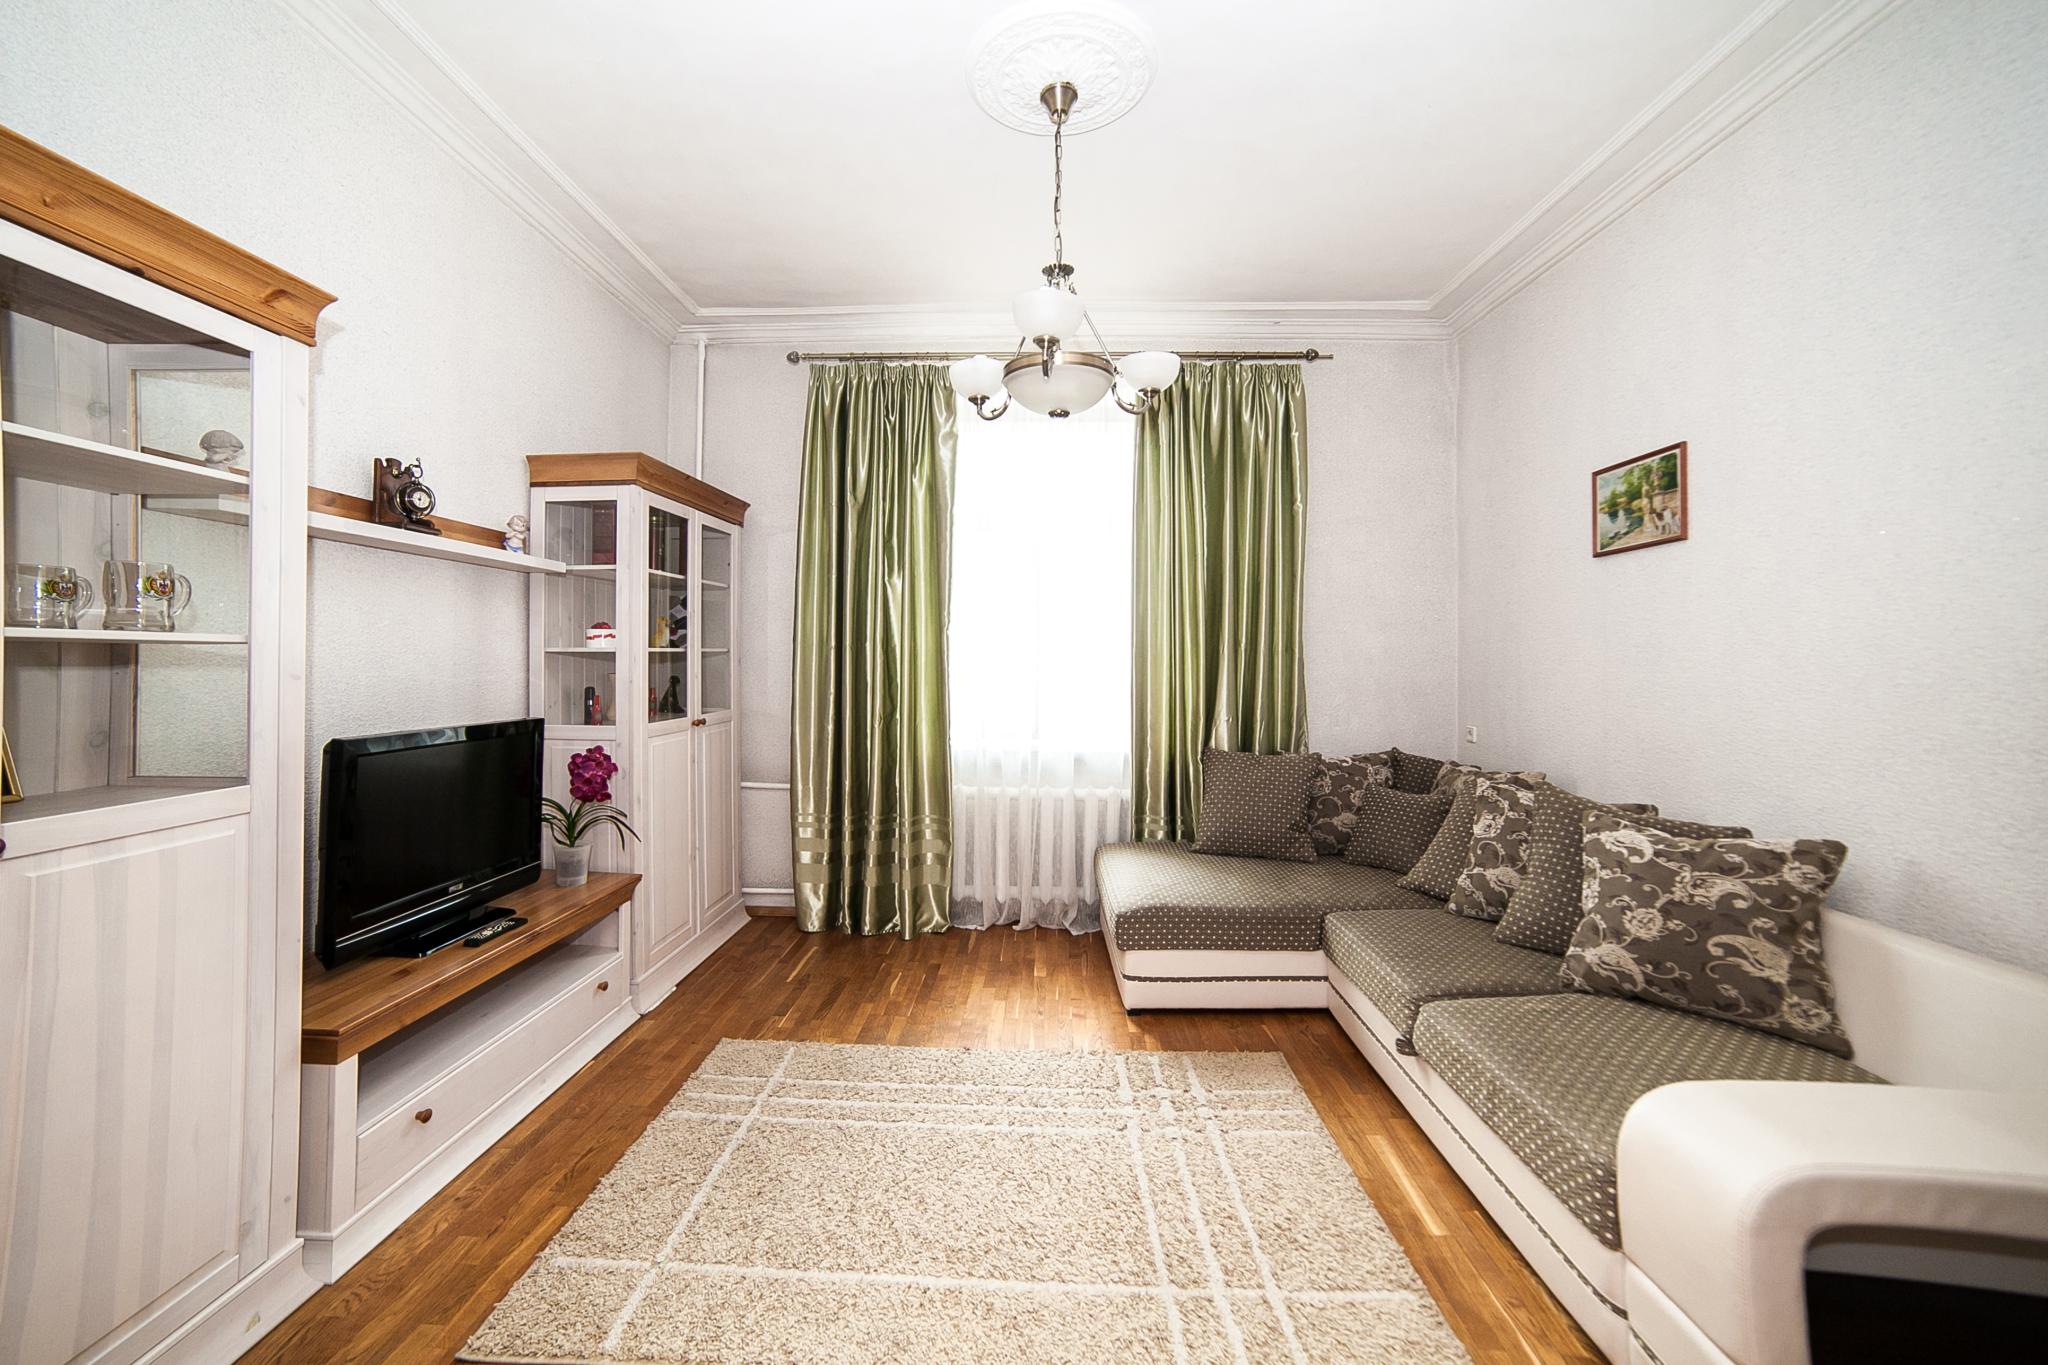 Квартира 1 комнатная минская. Купить квартиру в городе Минске.